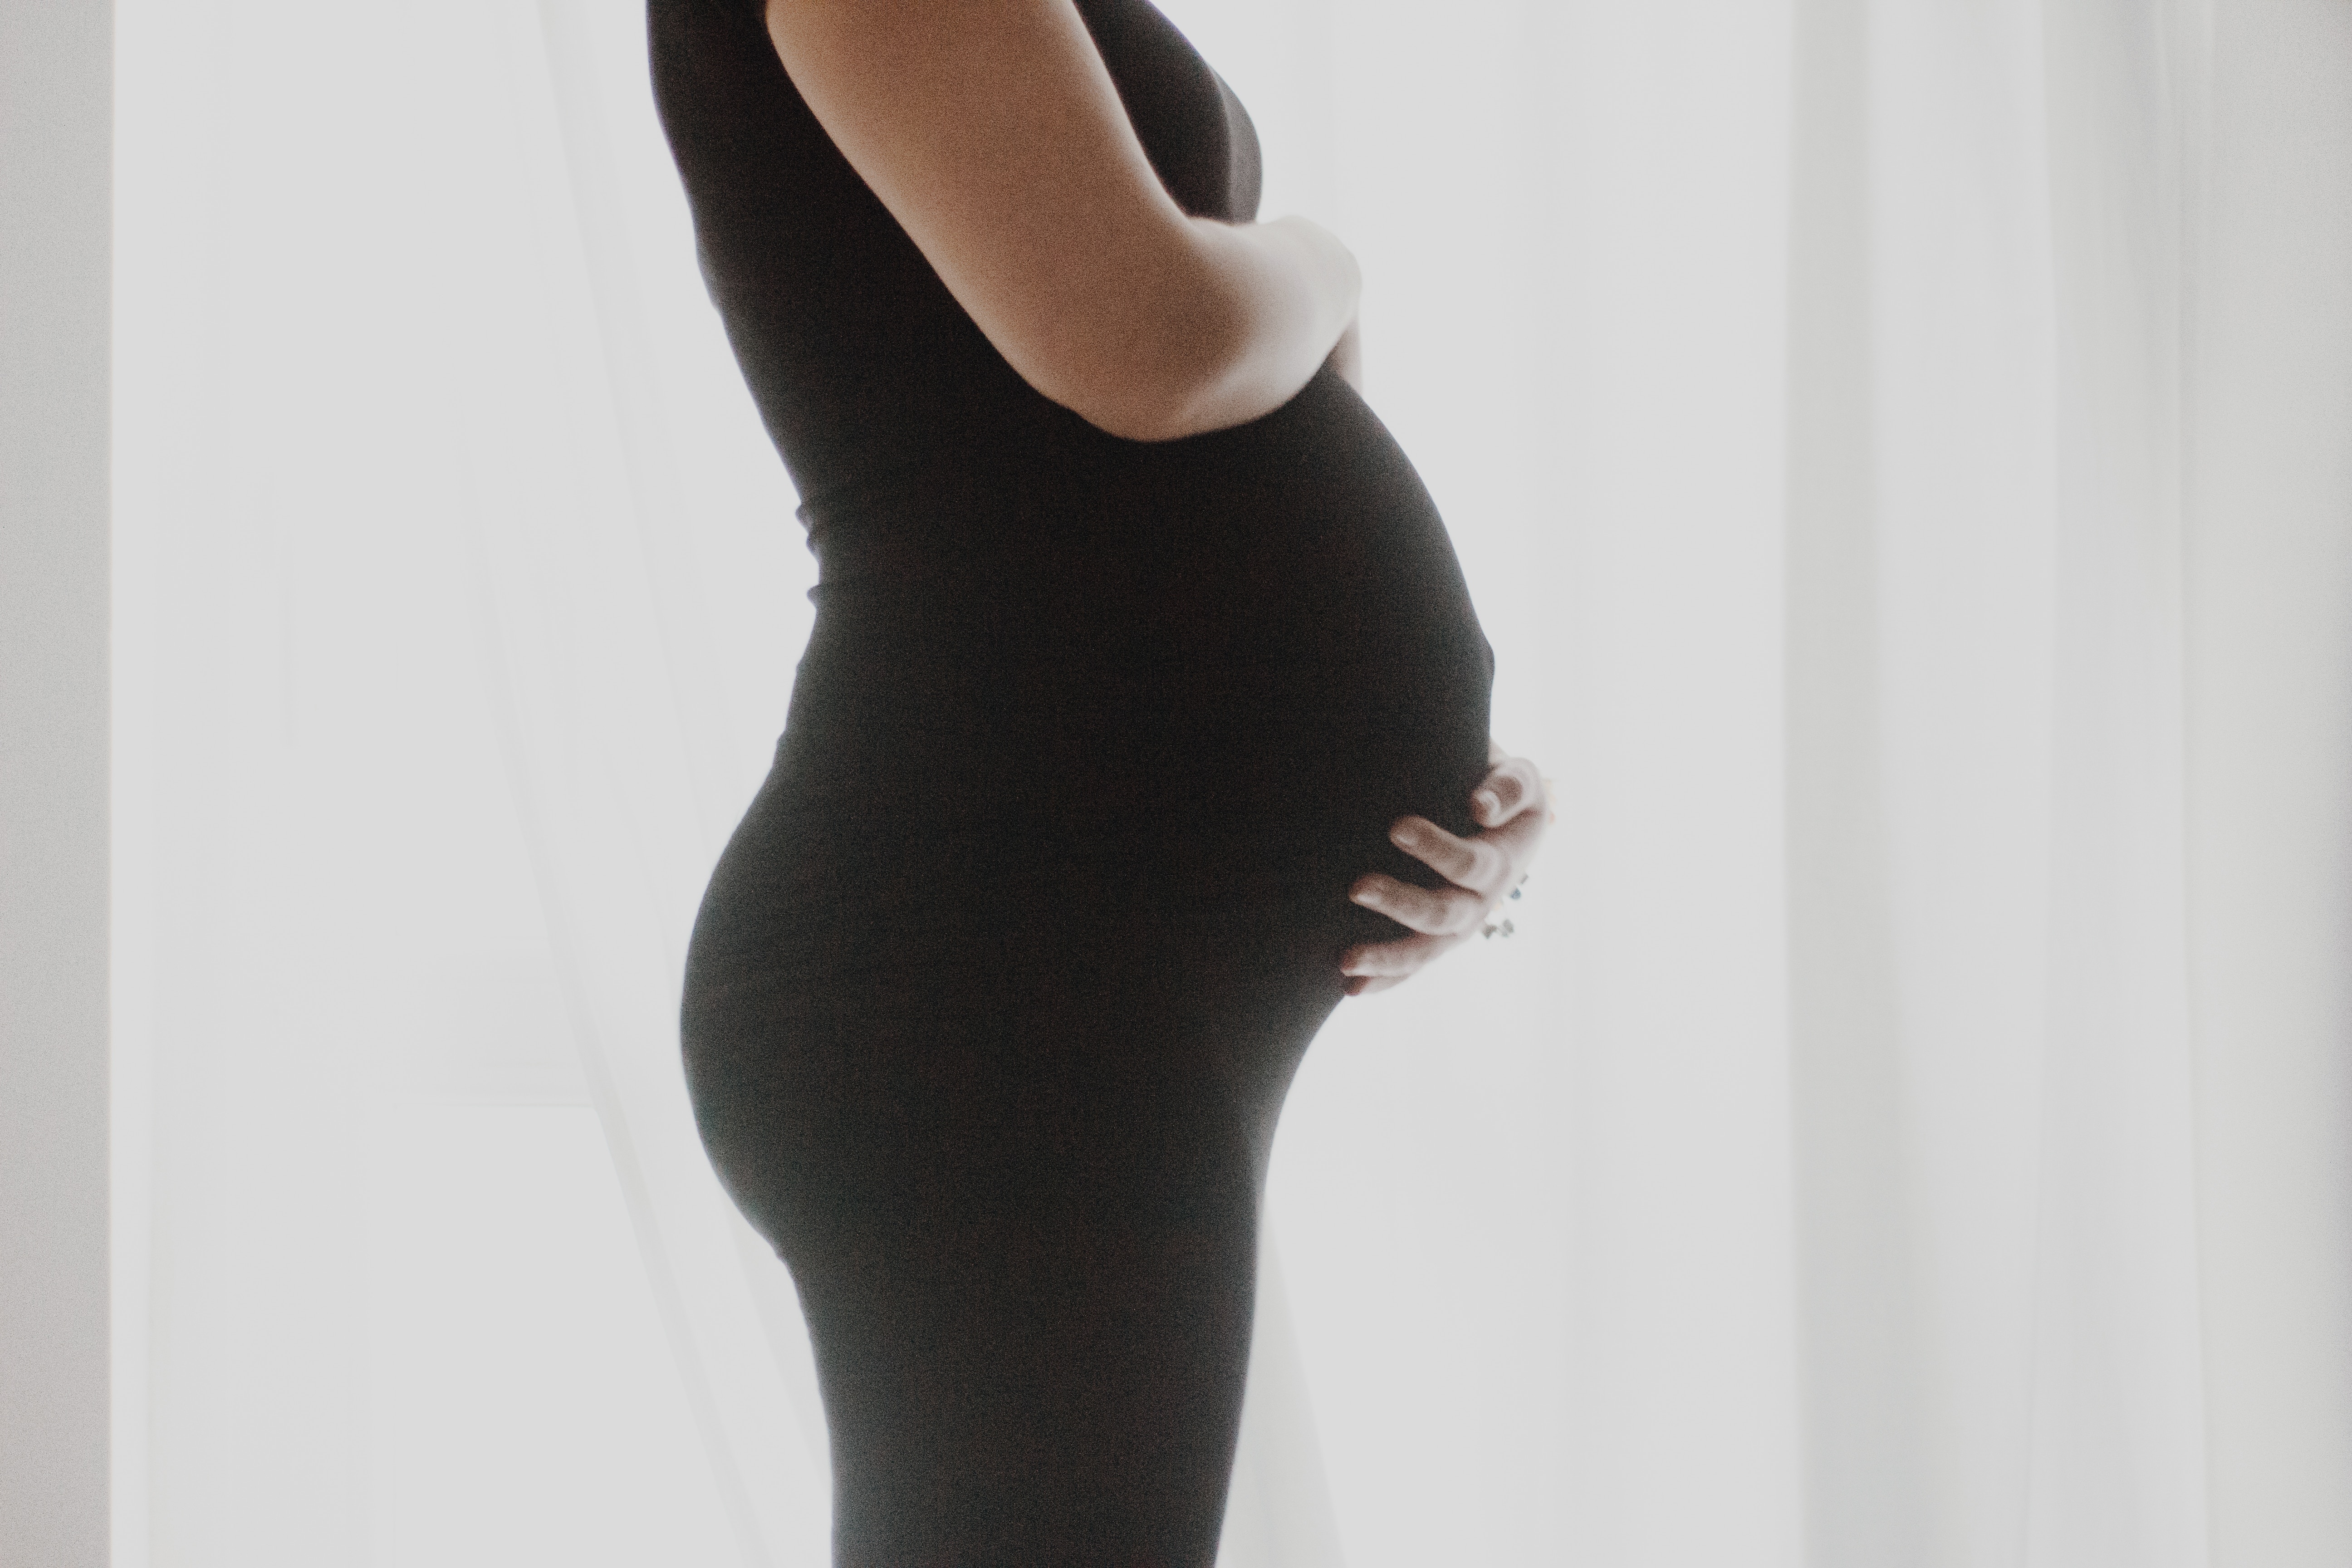 Pregnant woman wearing black pants